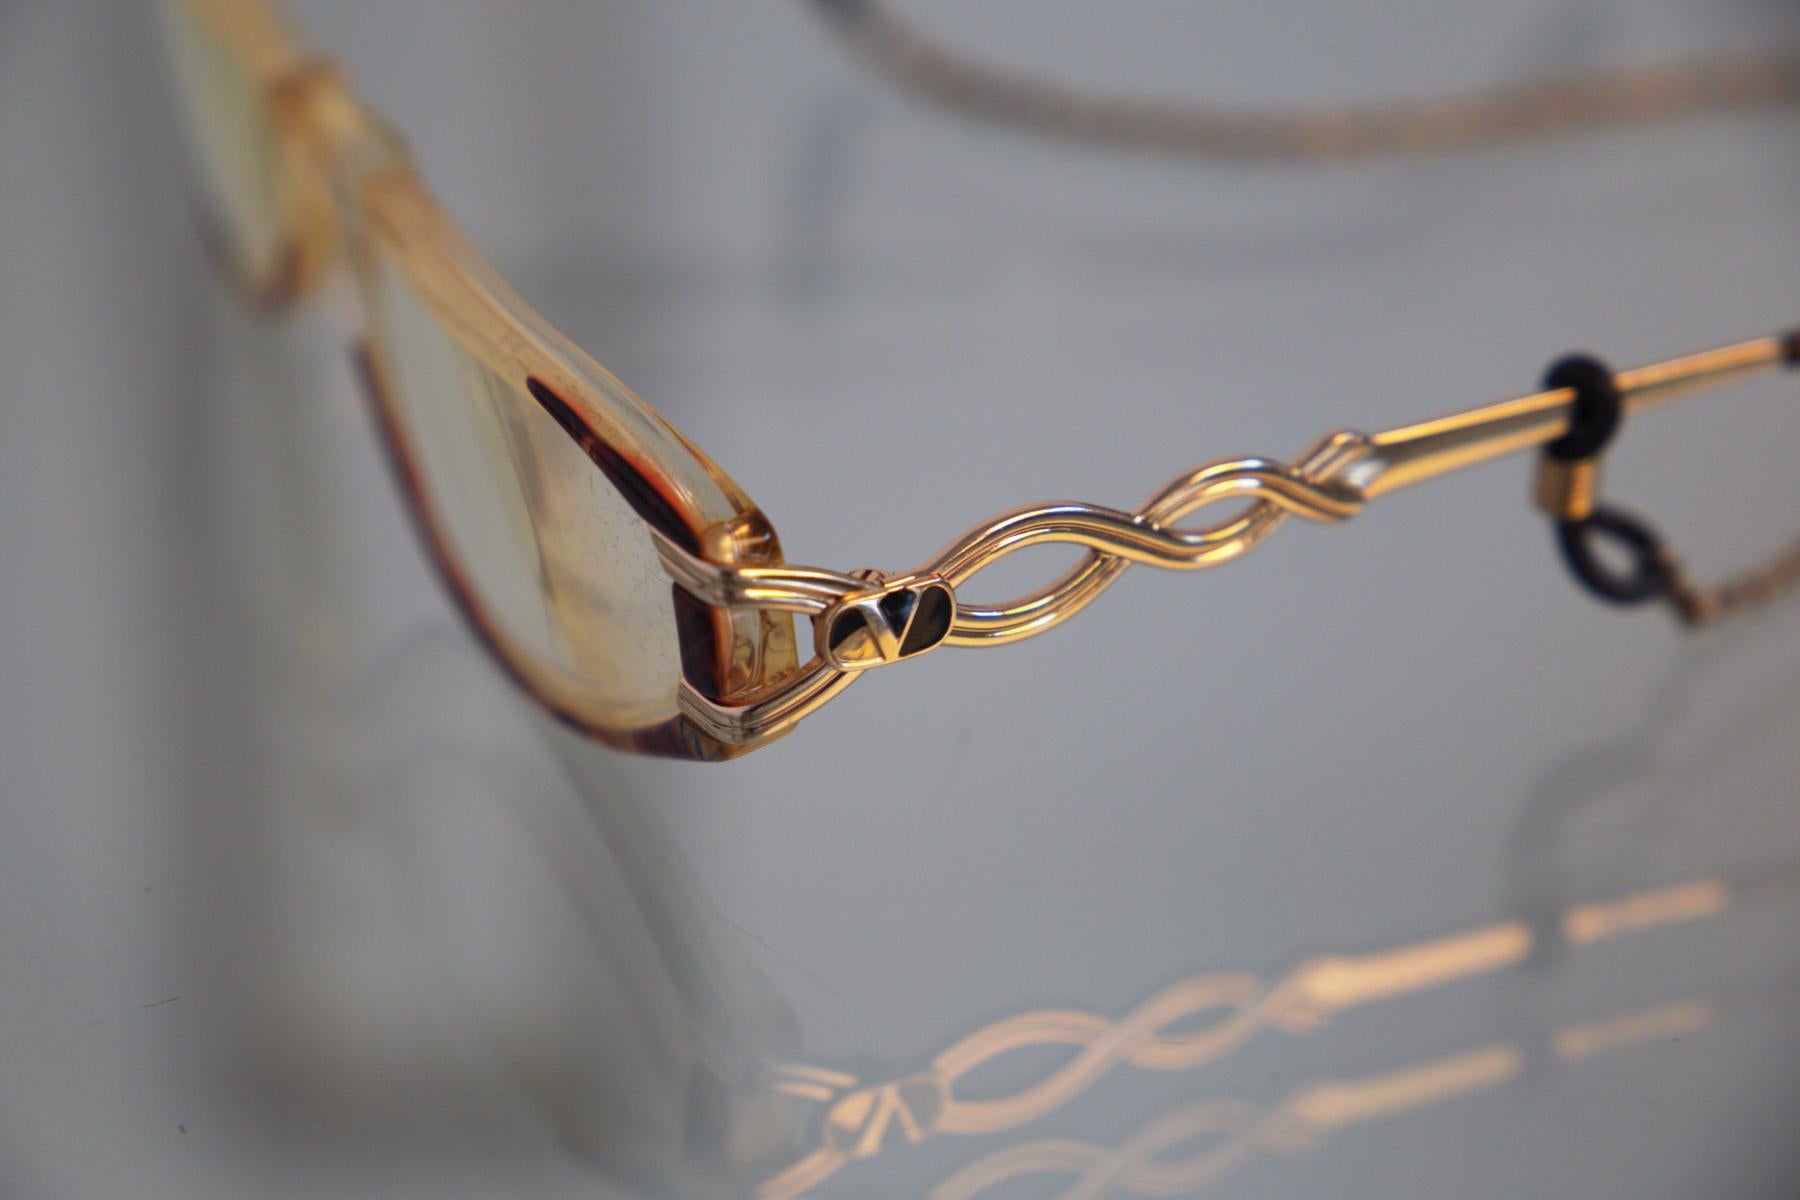 Magnifiques et élégantes lunettes de vue conçues par Valentino dans les années 1990, fabriquées en Italie. MARQUE ORIGINALE.
La monture est très douce et en forme d'œil de chat, style écaille de tortue. Les baguettes sont en or brillant et